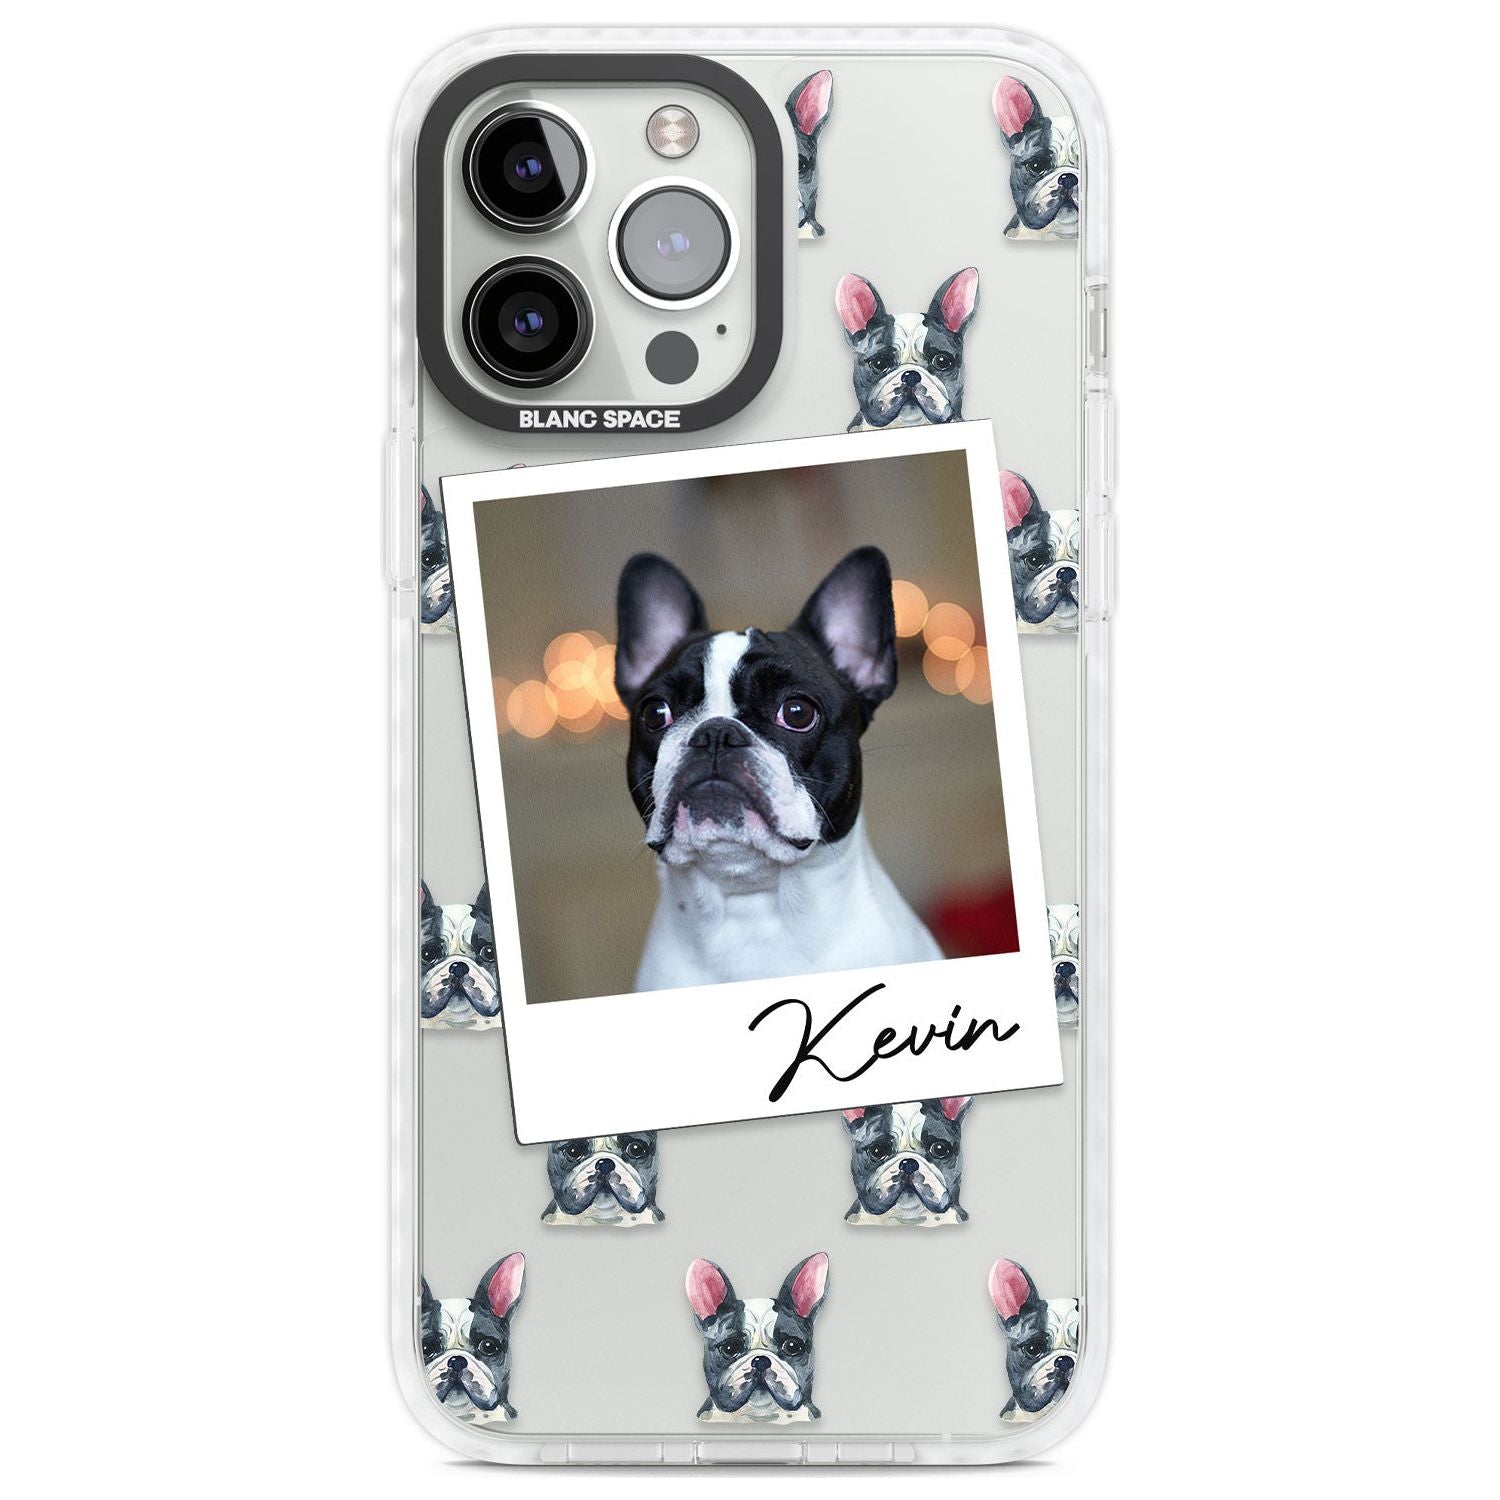 Personalised French Bulldog, Black & White - Dog Photo Custom Phone Case iPhone 13 Pro Max / Impact Case,iPhone 14 Pro Max / Impact Case Blanc Space